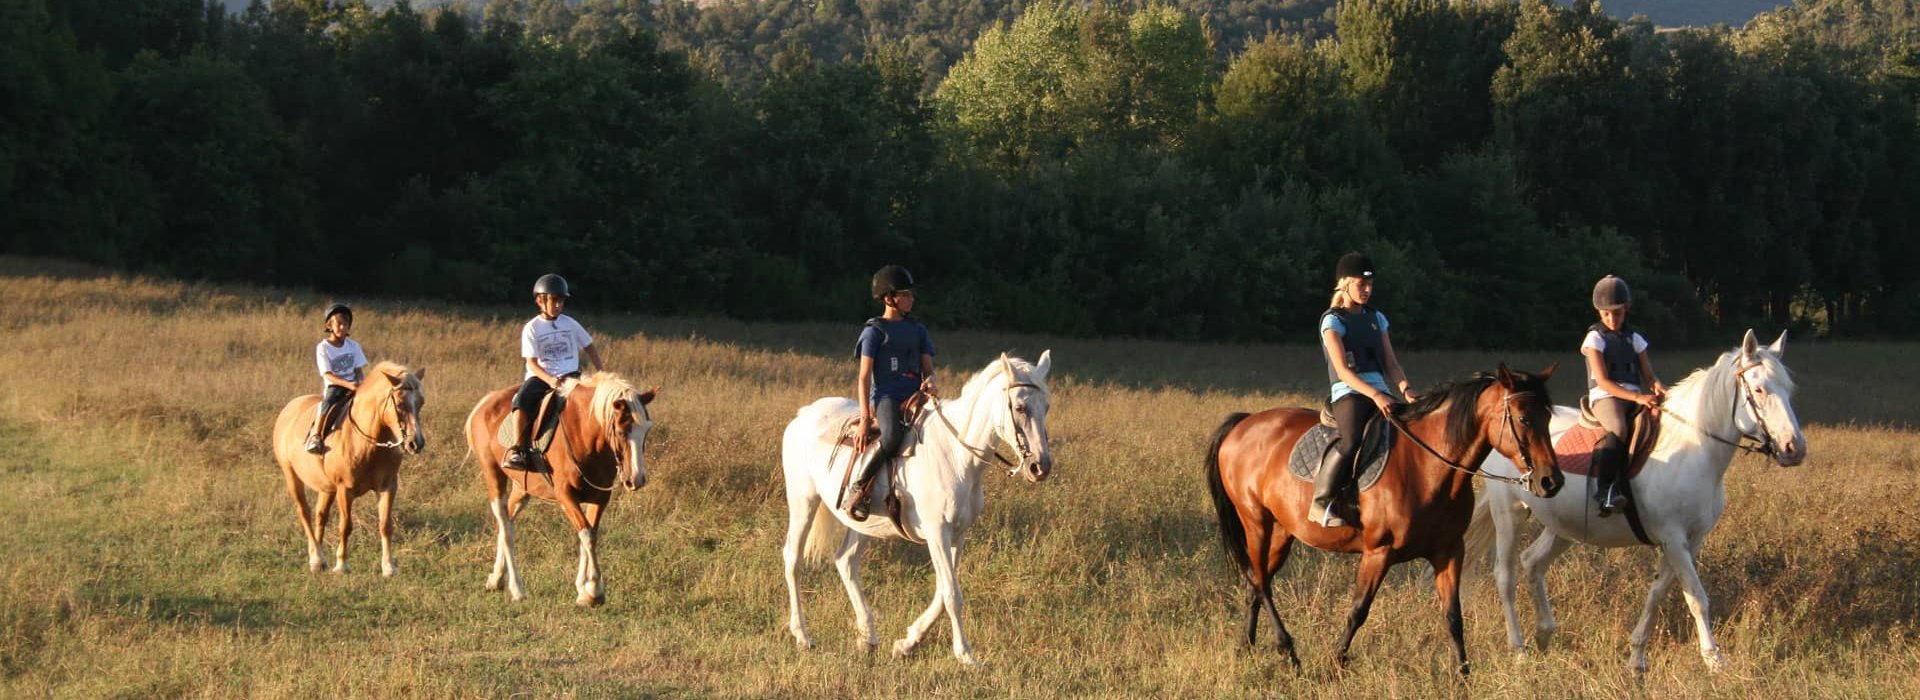 Gita a cavallo in Toscana Padule di Fucecchio